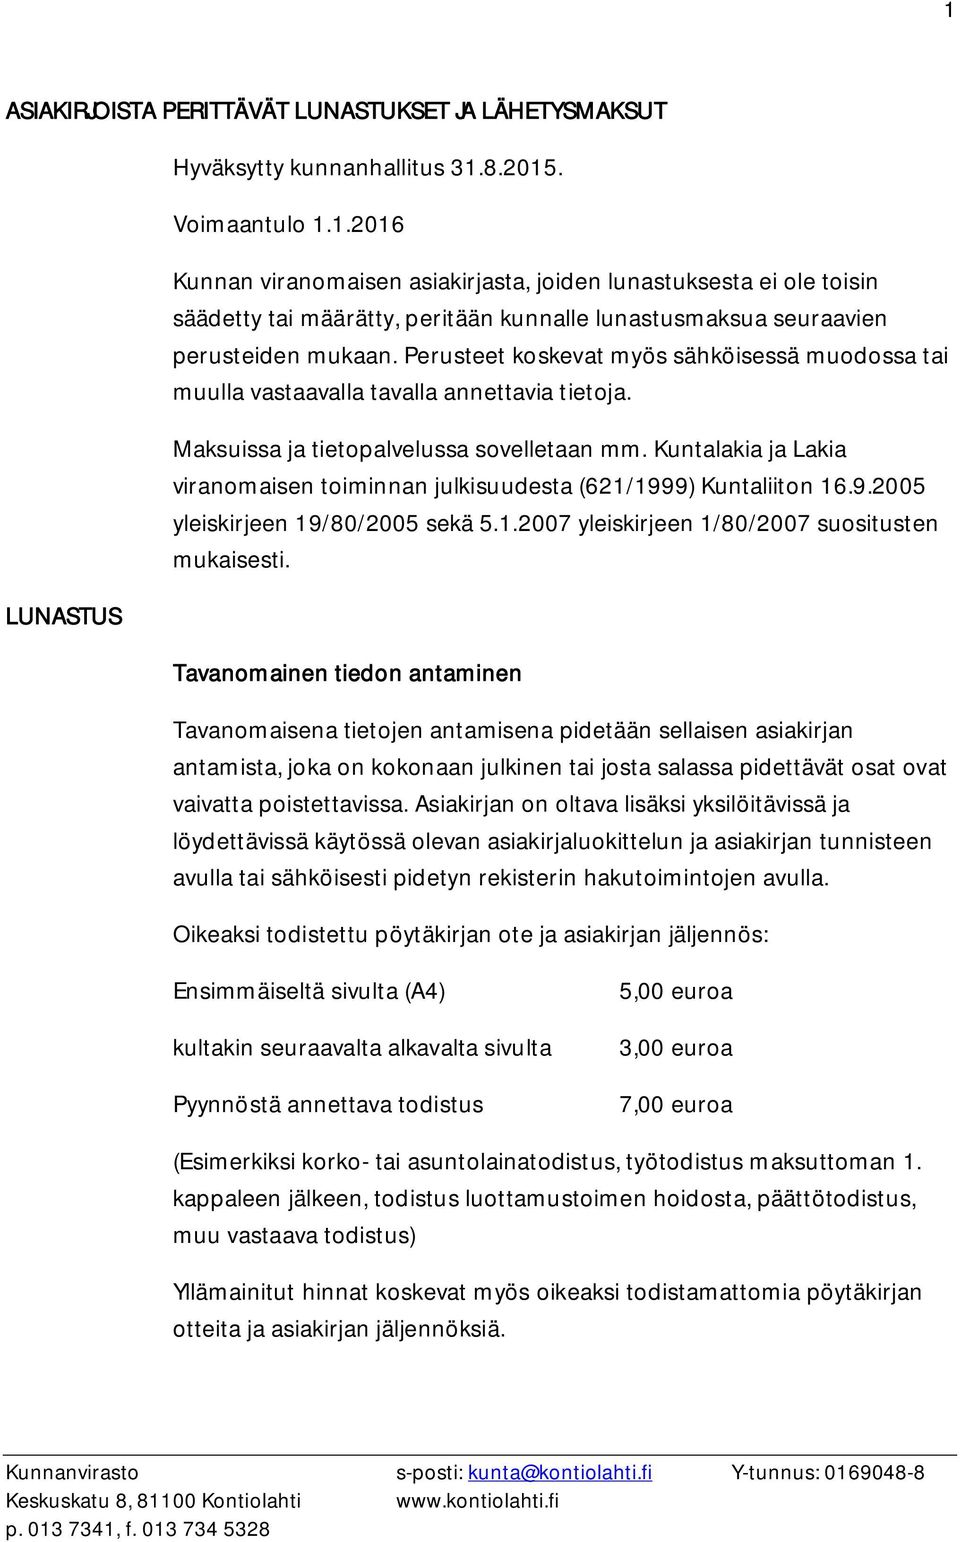 Kuntalakia ja Lakia viranomaisen toiminnan julkisuudesta (621/1999) Kuntaliiton 16.9.2005 yleiskirjeen 19/80/2005 sekä 5.1.2007 yleiskirjeen 1/80/2007 suositusten mukaisesti.